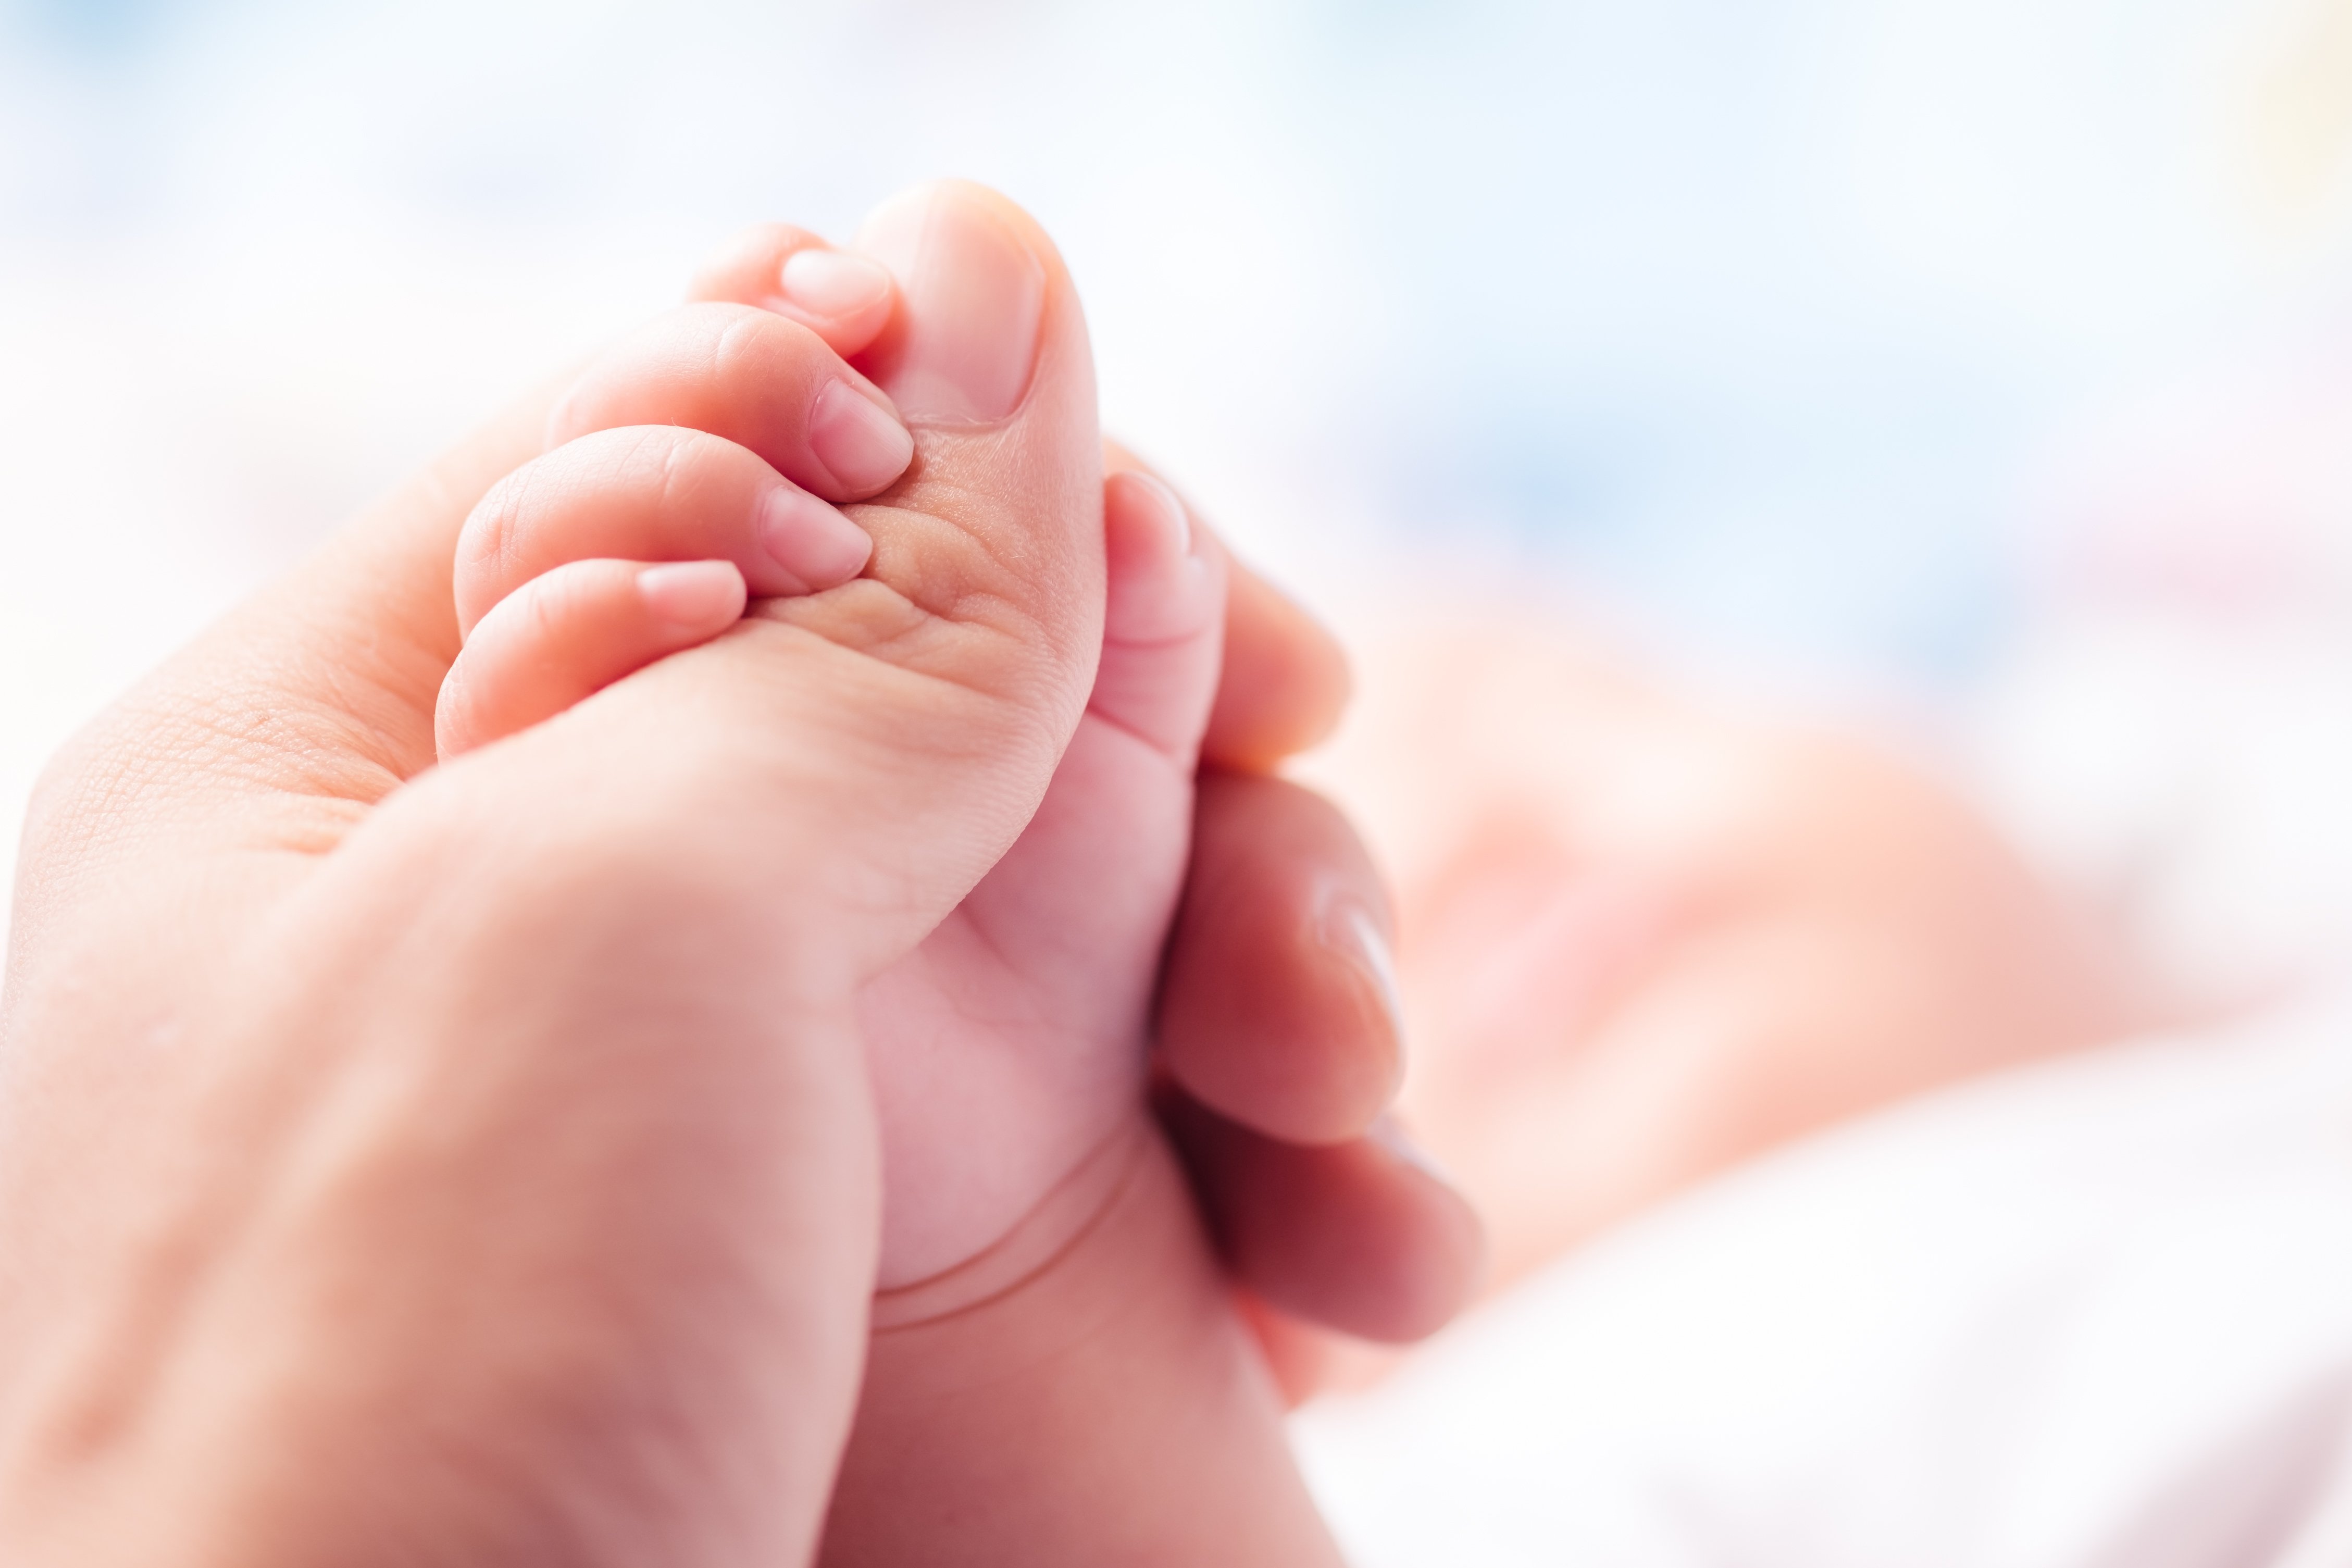 Mano de bebé recién nacido. Fuente: Shutterstock